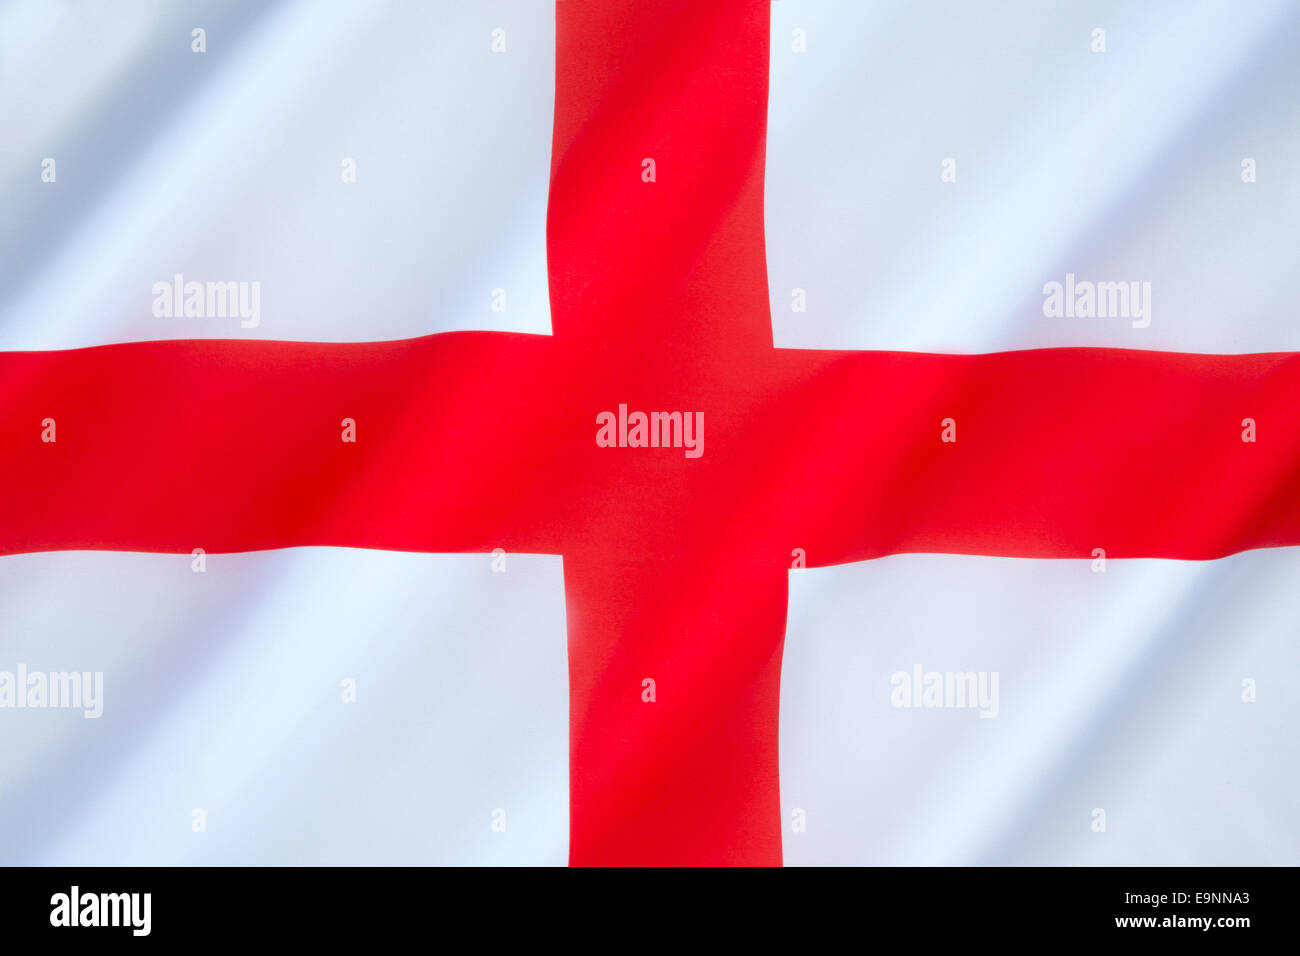 Flag of England - United Kingdom Stock Photo